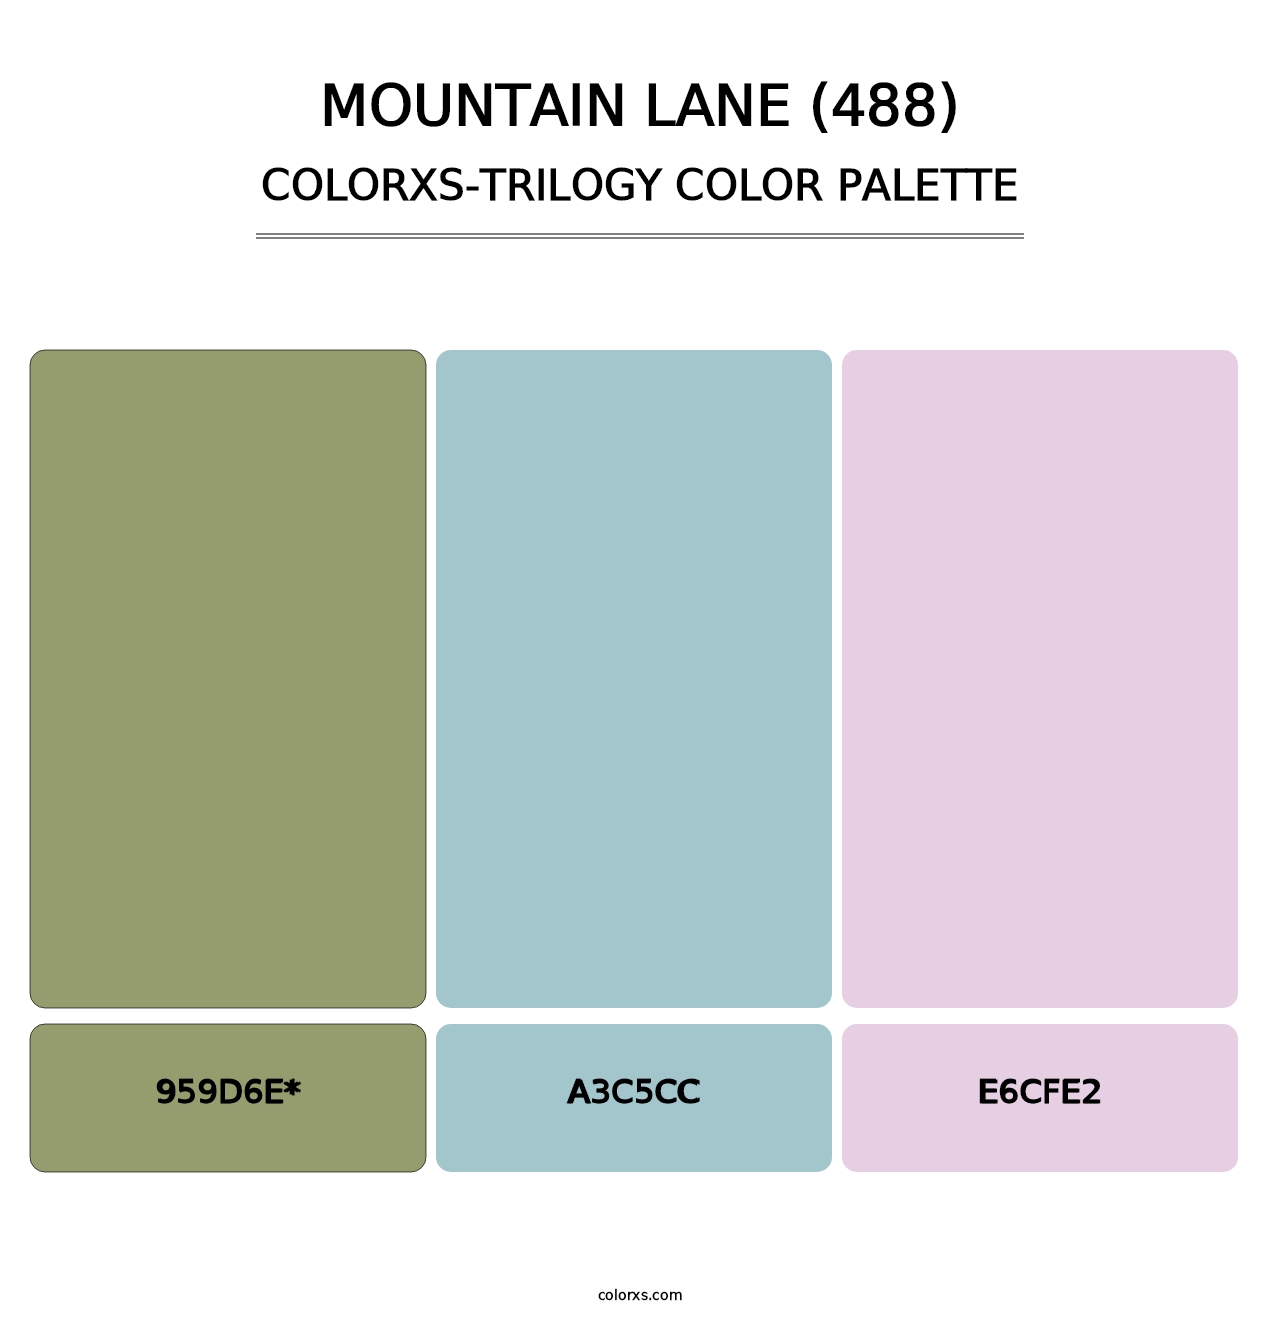 Mountain Lane (488) - Colorxs Trilogy Palette